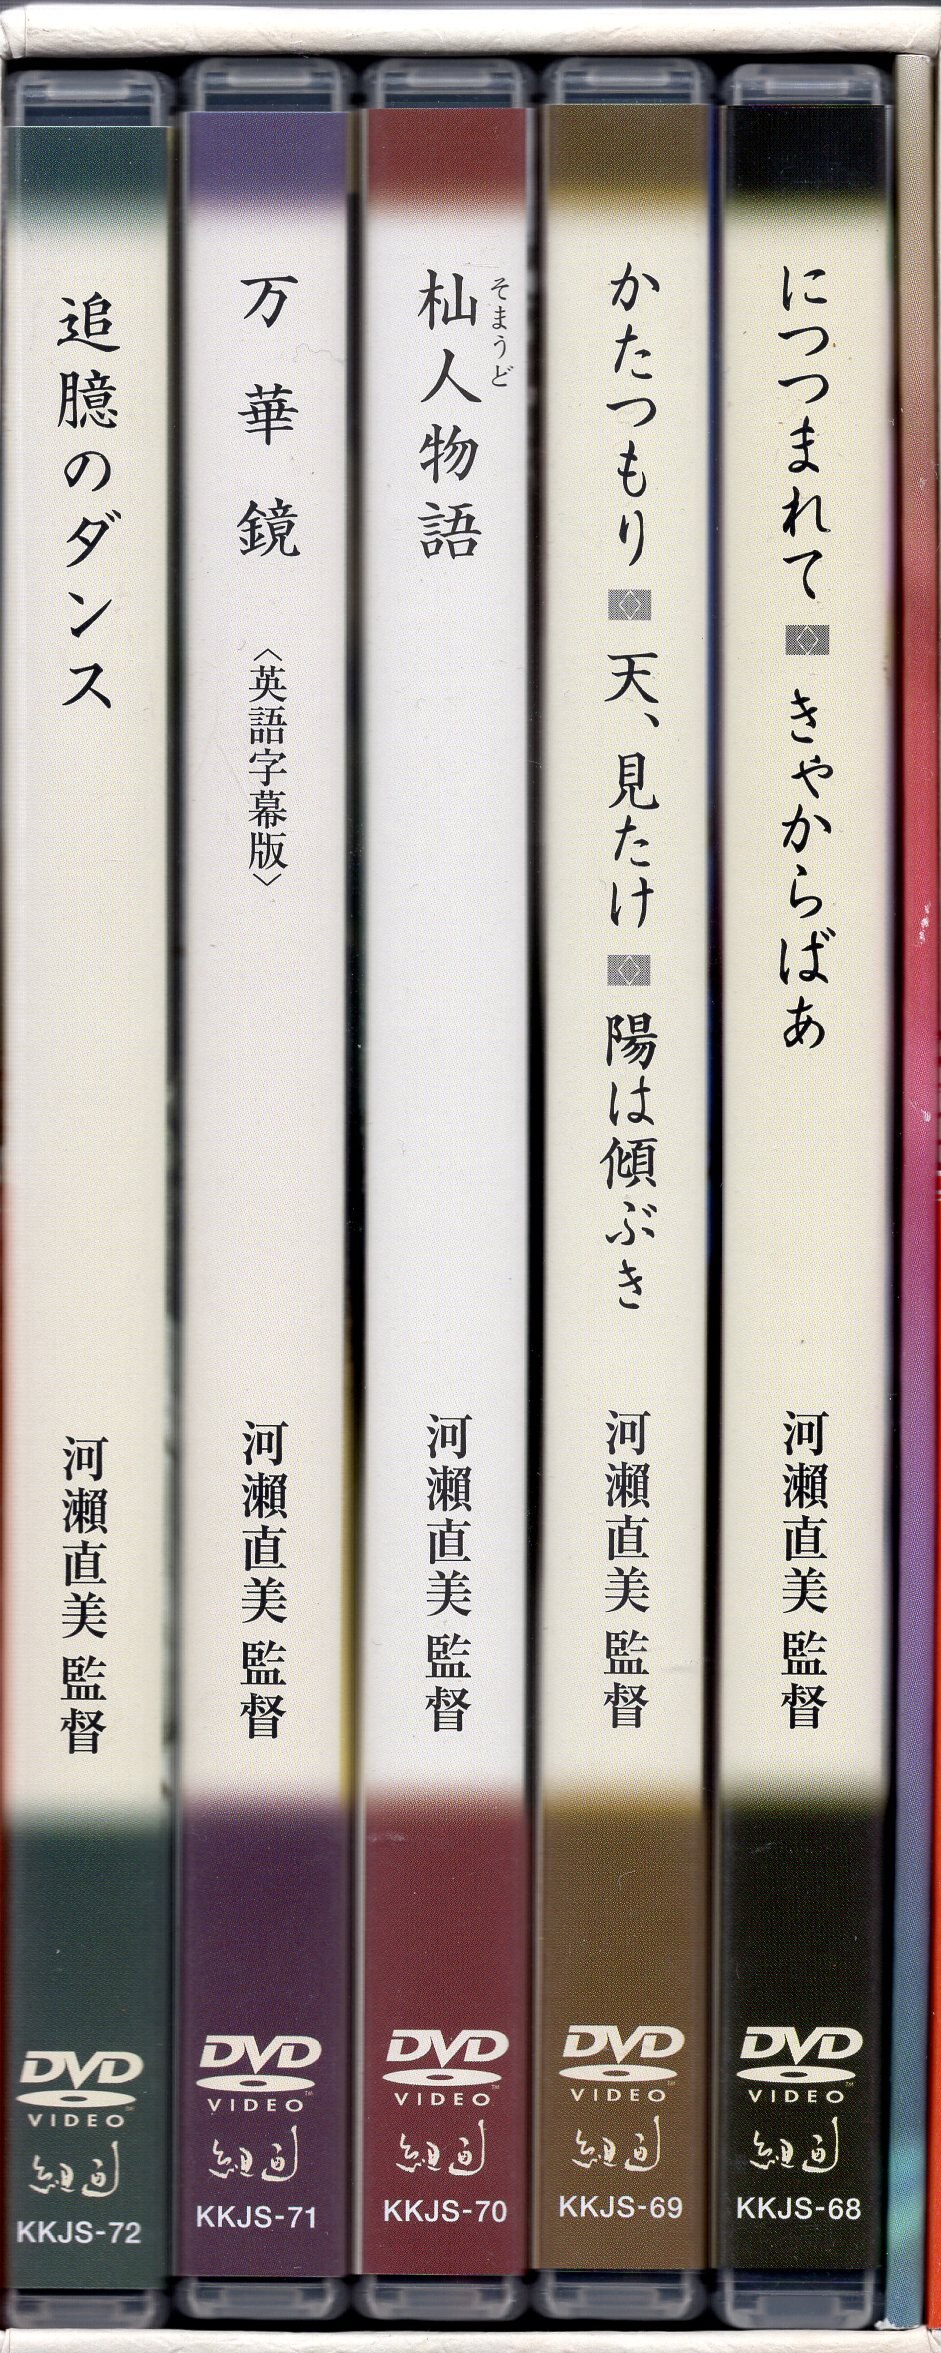 【大阪直売】河瀬直美ドキュメンタリー DVD-BOX〈5枚組〉 邦画・日本映画